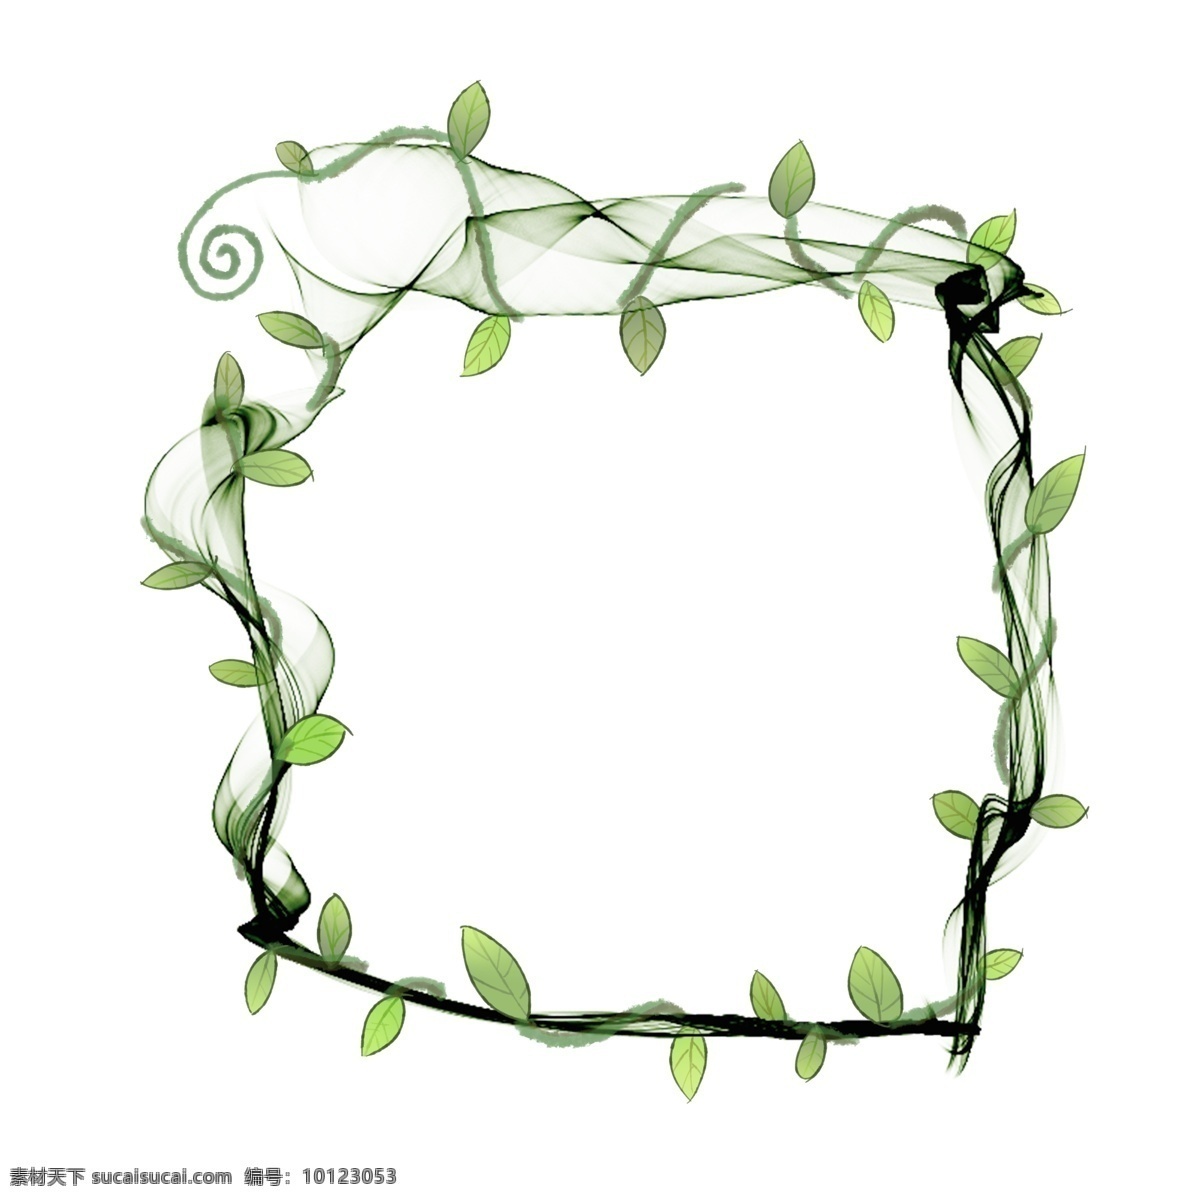 原创 绿色植物 边框 缠绕 商用 元素 绿色 植物 设计元素 装饰 可商用